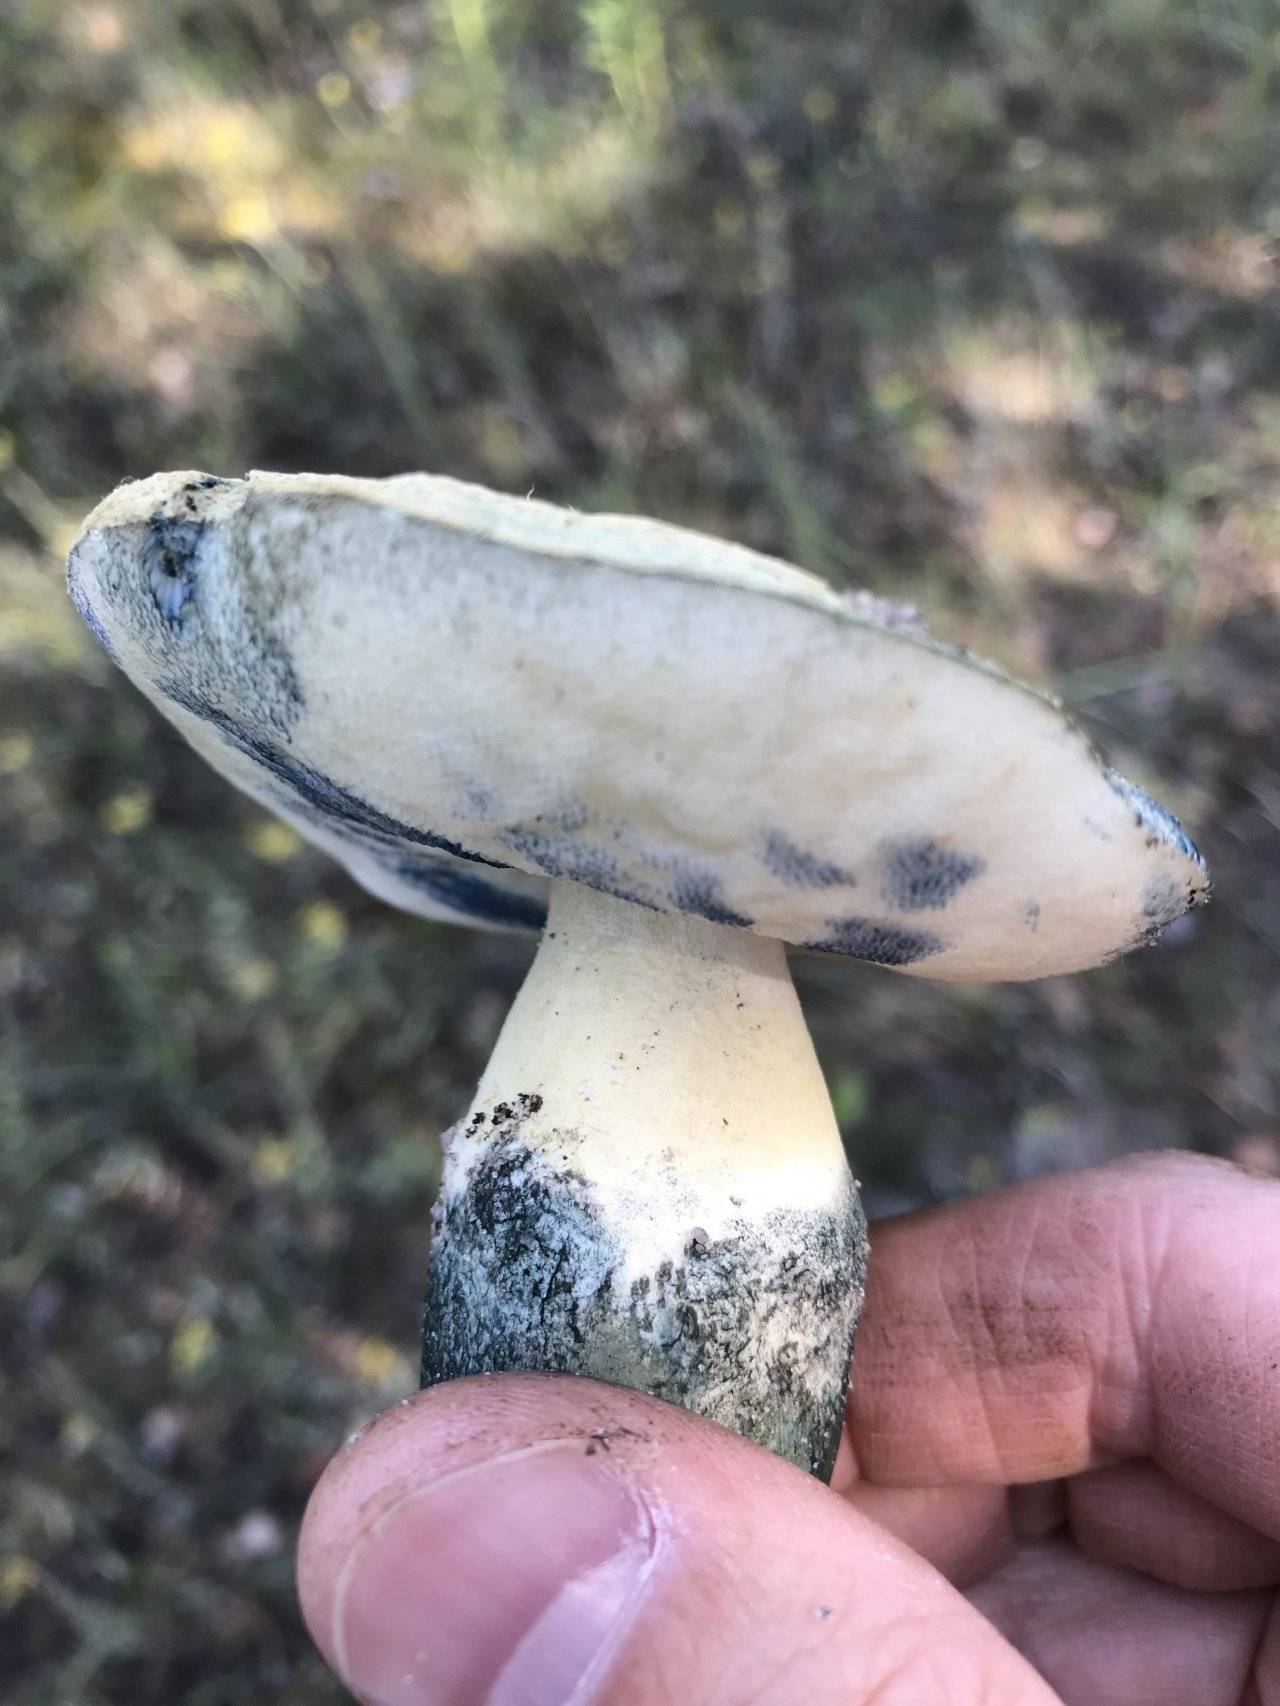 Ксилария многообразная (xylaria polymorpha) также известная как пальцы мертвеца: фото, описание, где растет и чем опасен гриб